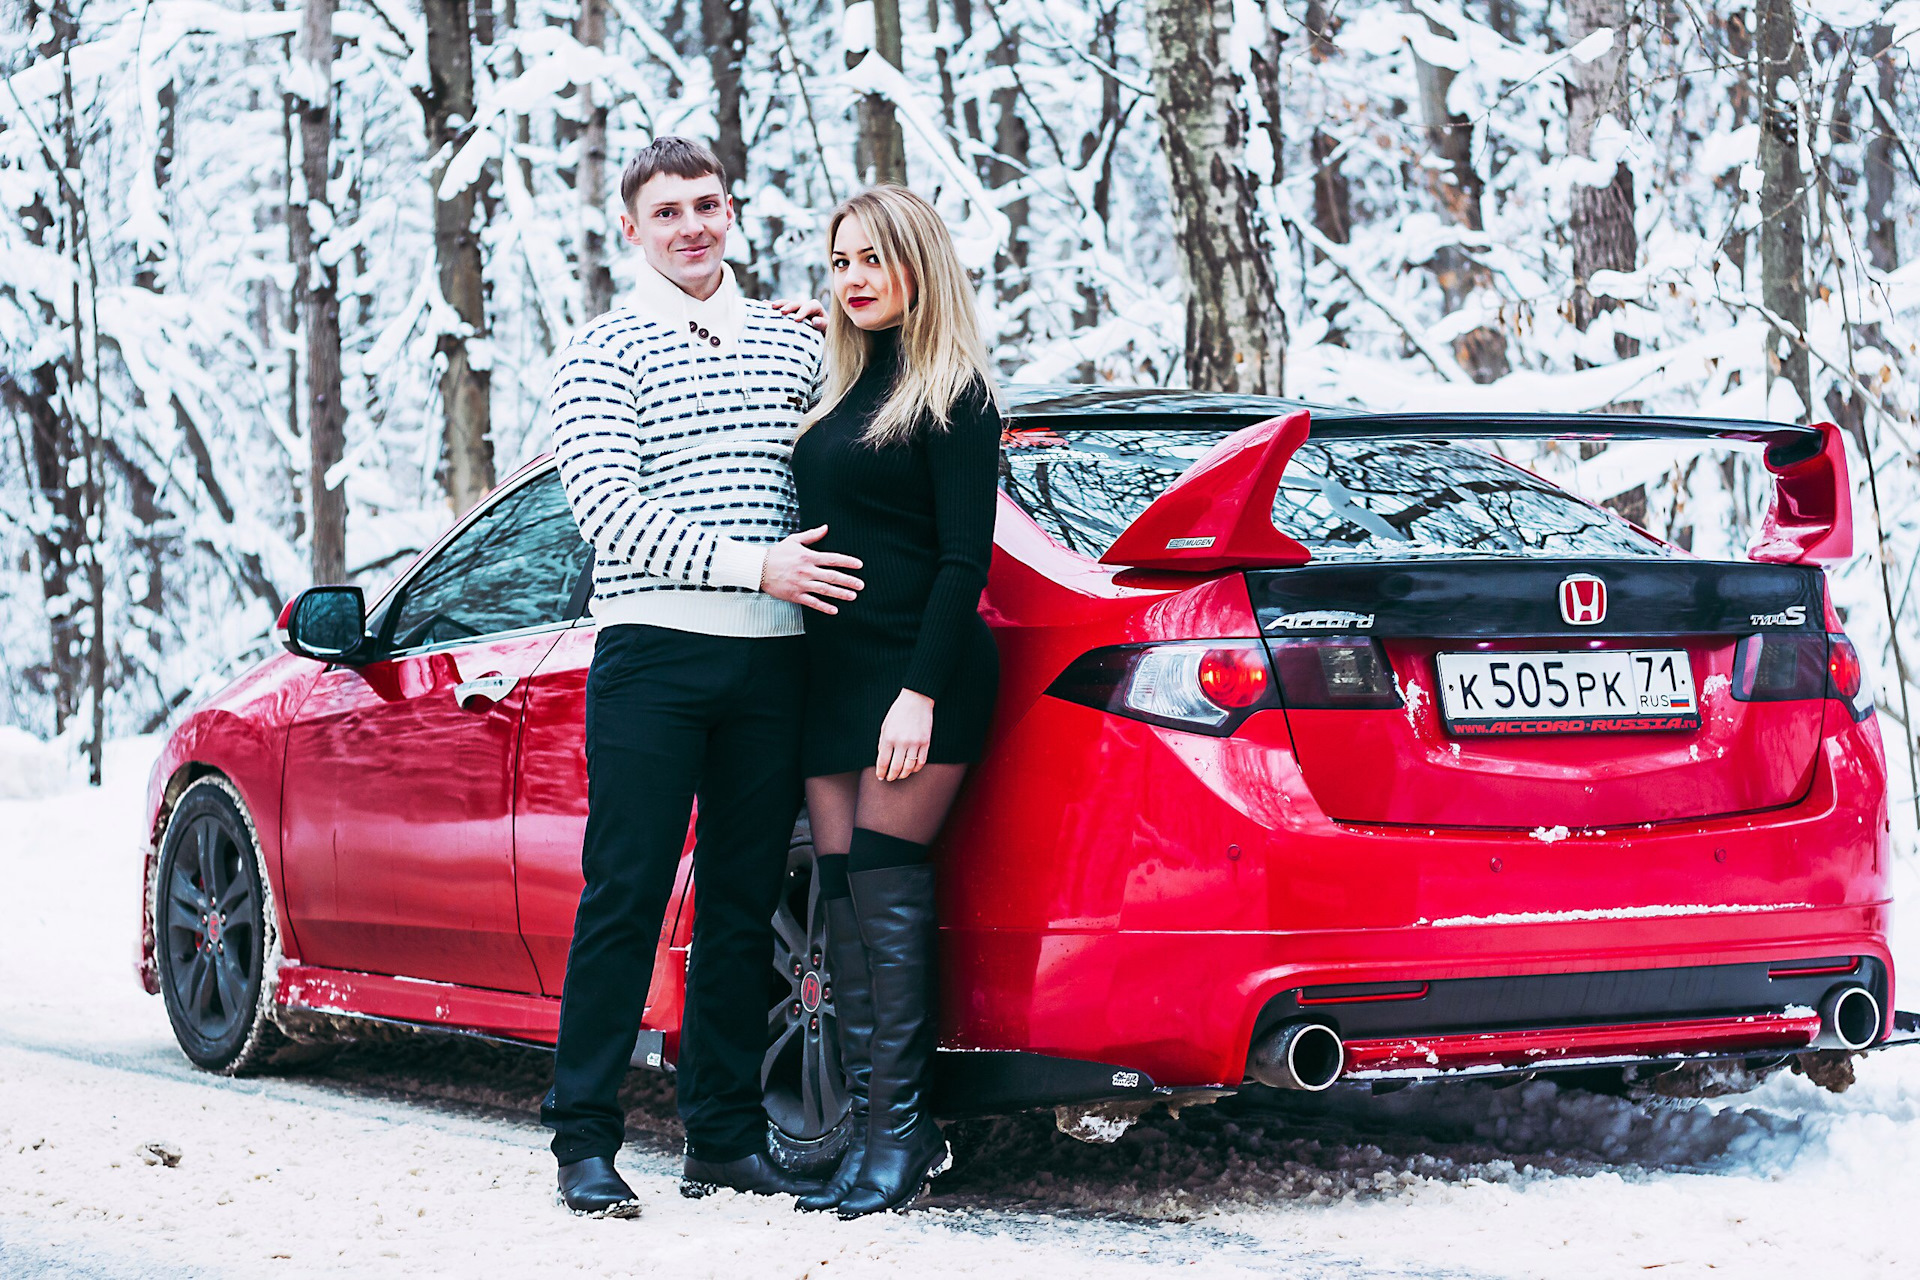 Мужчины машина и жена. Пара возле машины. Фотосессия с машиной зимой. Парень с девушкой возле авто. Фотосессия пары около машины.